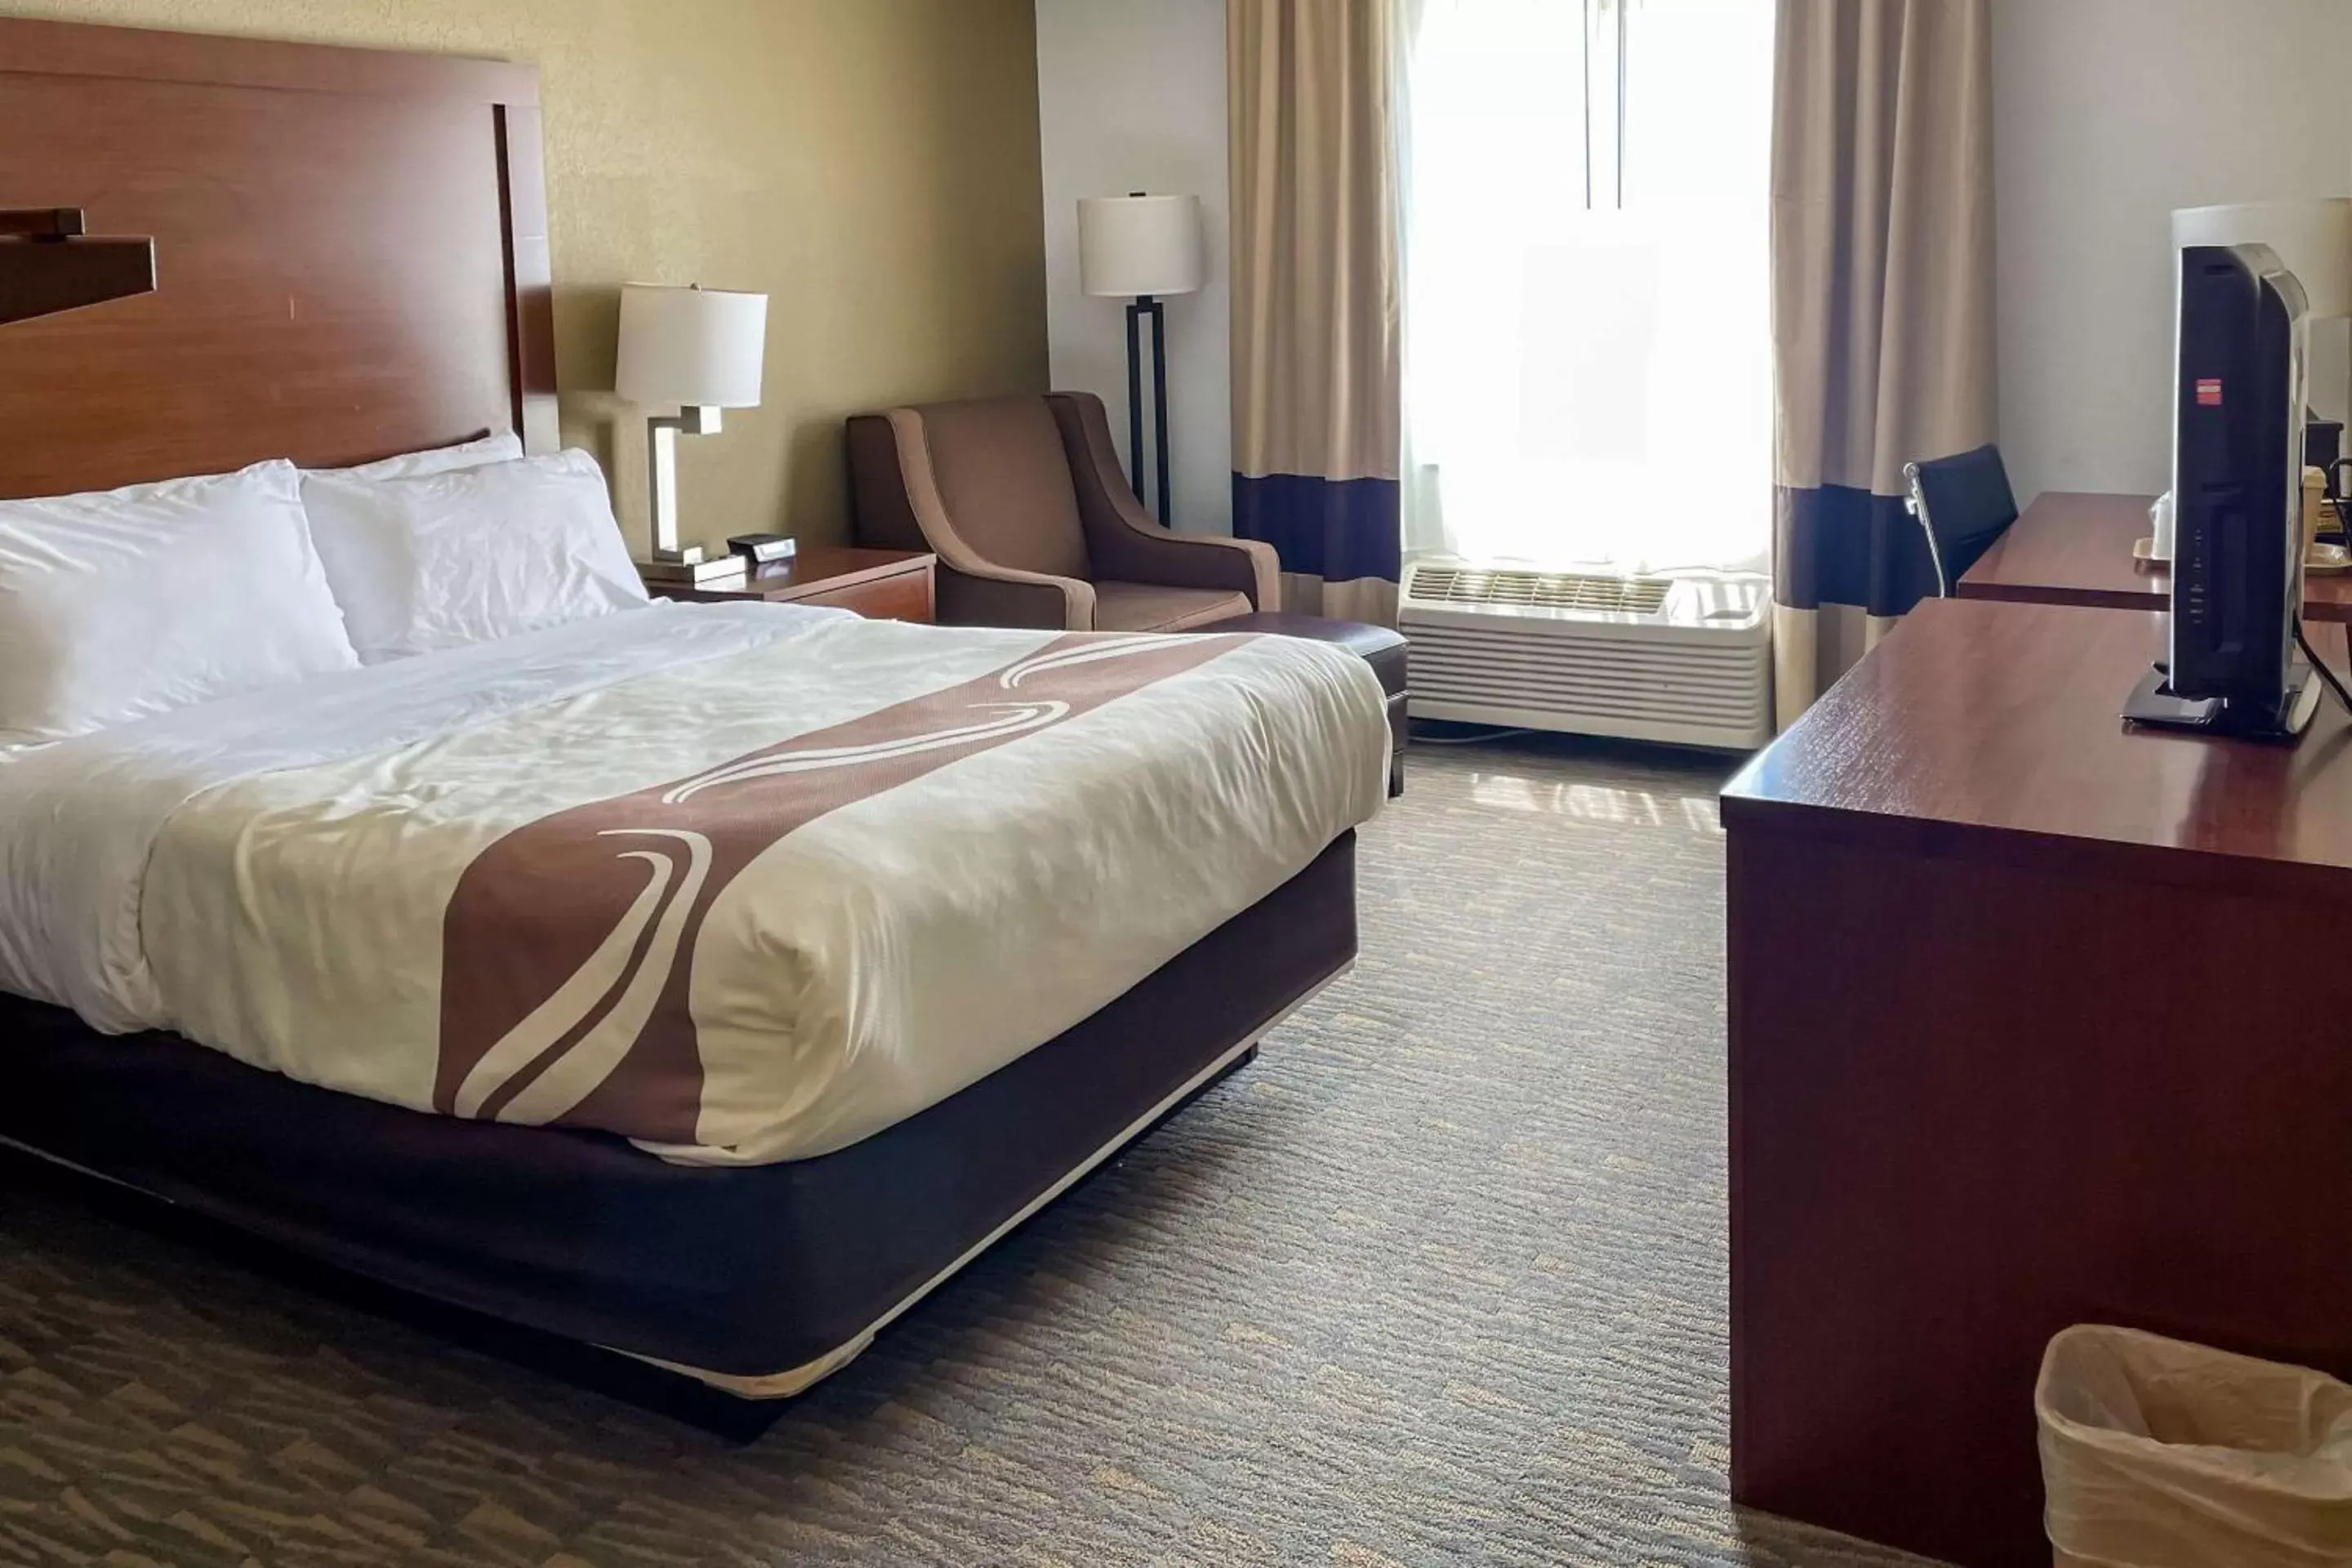 Bedroom, Bed in Quality Inn & Suites Georgetown - Seaford